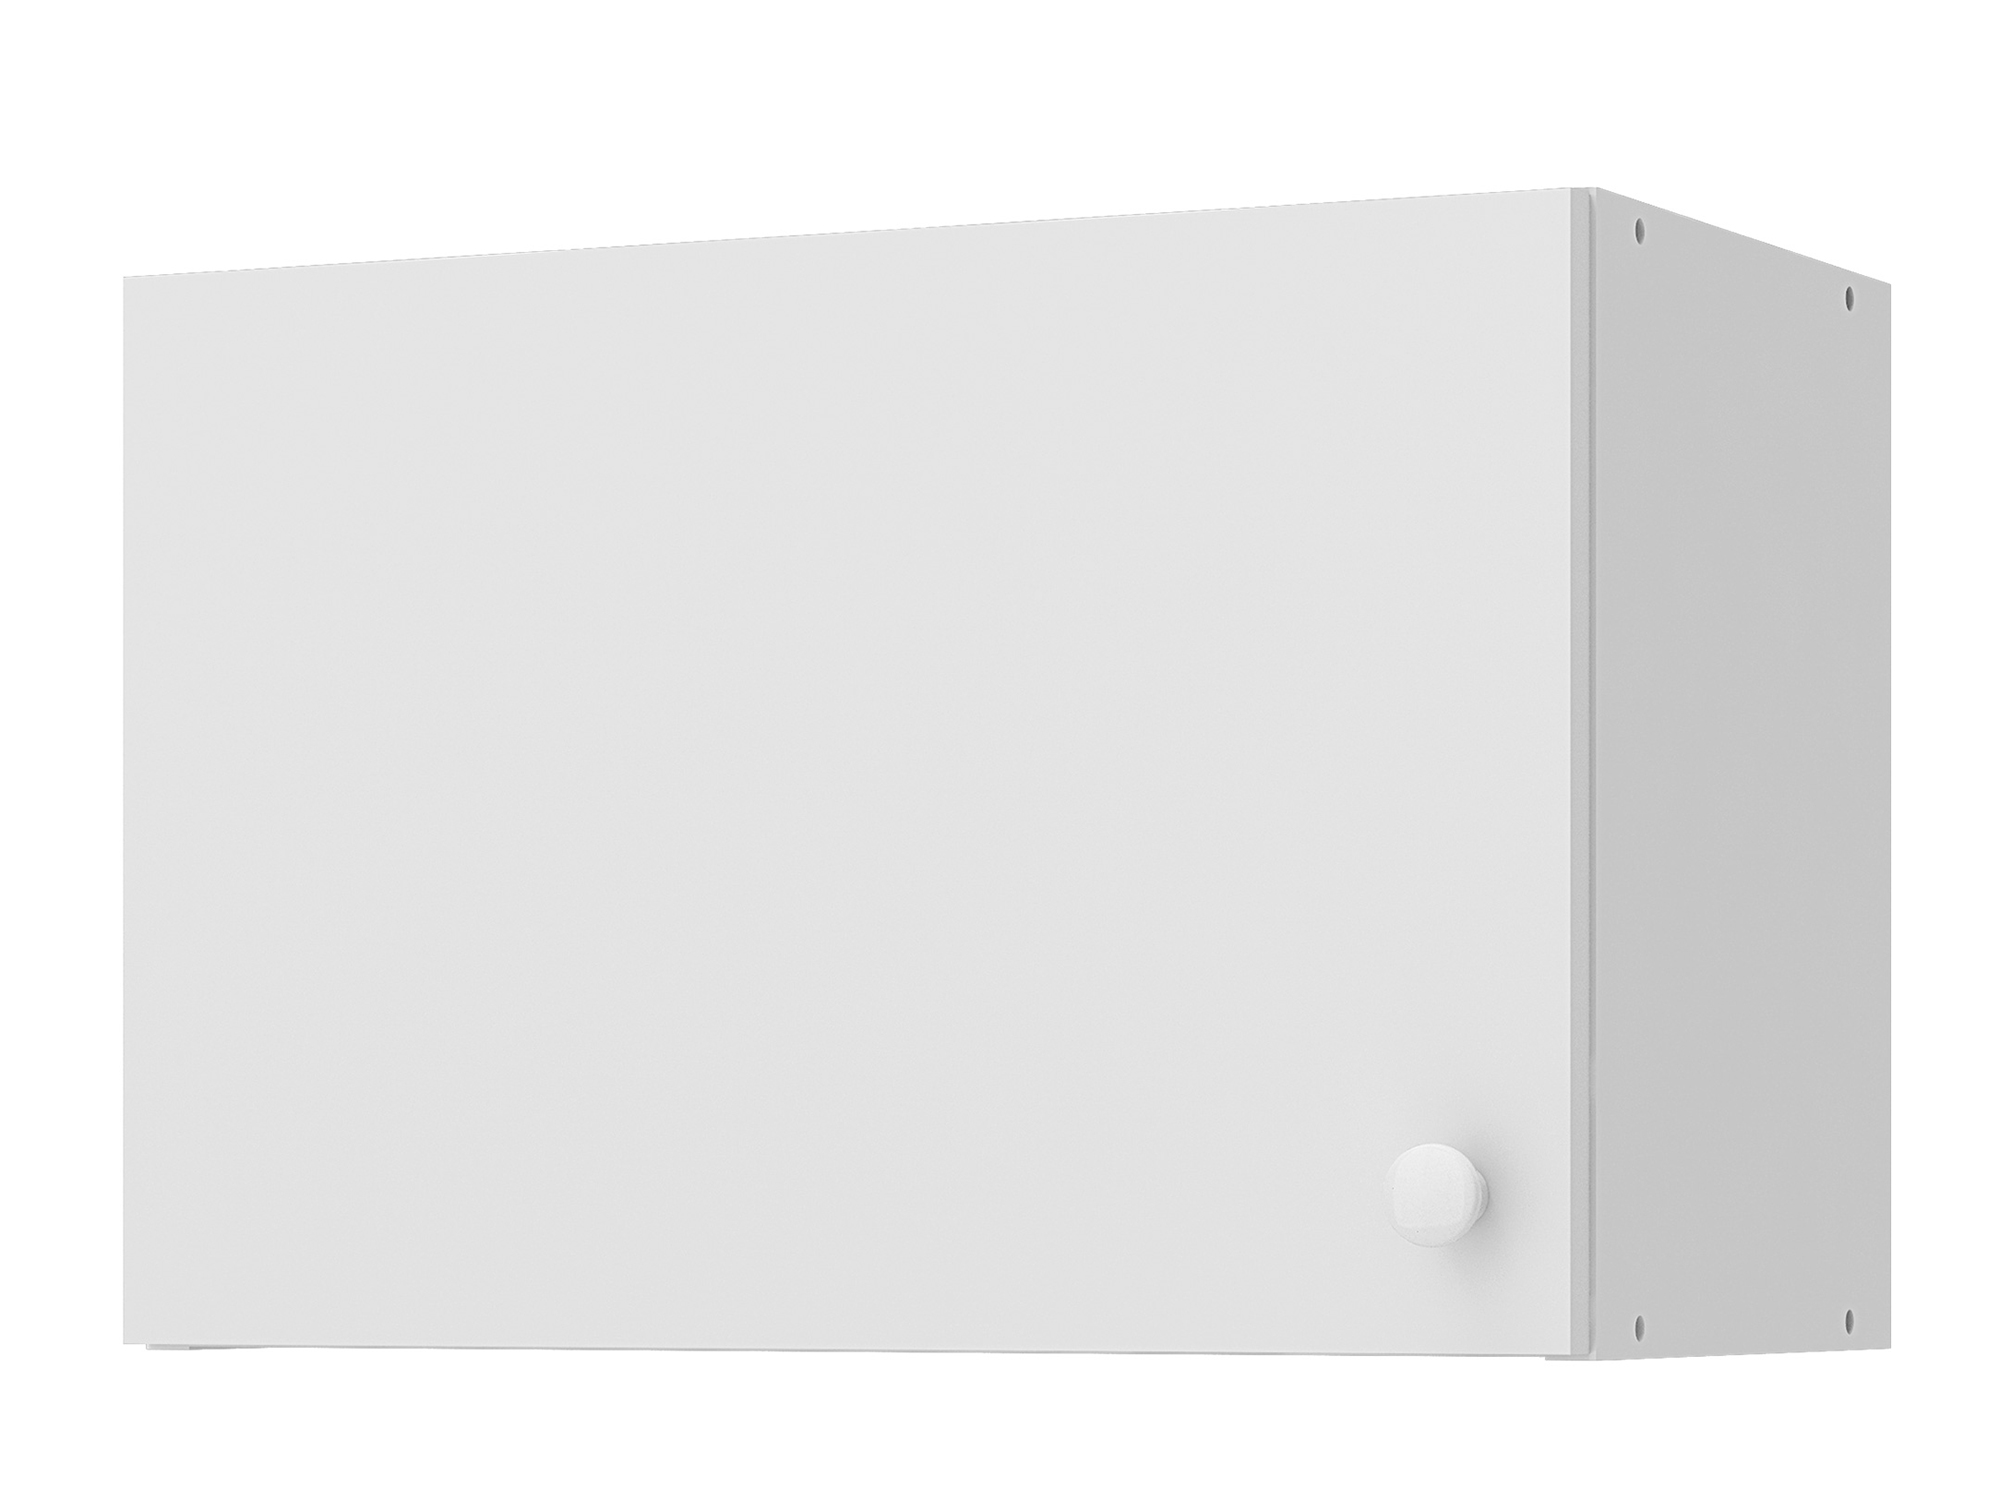 Шкаф навесной для вытяжки Бэлла, 50 см Белый, ЛДСП шкаф навесной для вытяжки 50 тортора металлик белый мдф лдсп